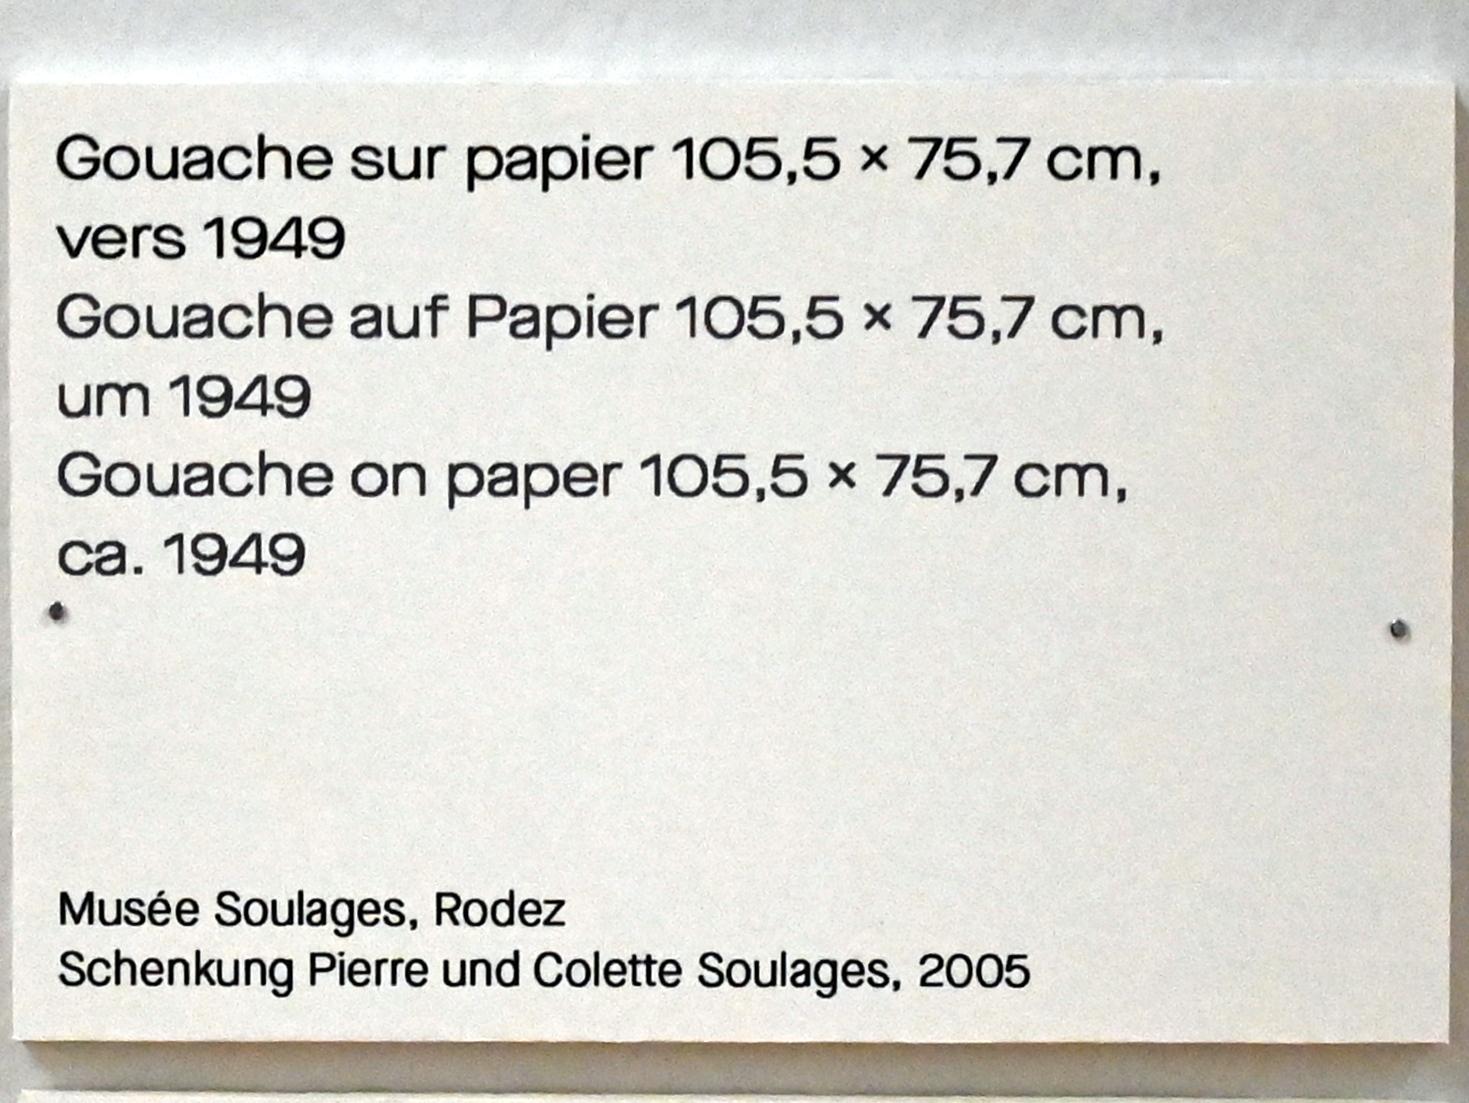 Pierre Soulages (1946–2019), Gouache auf Papier 105,5 x 75,7 cm, um 1949, Chemnitz, Kunstsammlungen am Theaterplatz, Ausstellung "Soulages" vom 28.03.-25.07.2021, Saal 4, um 1949, Bild 2/2